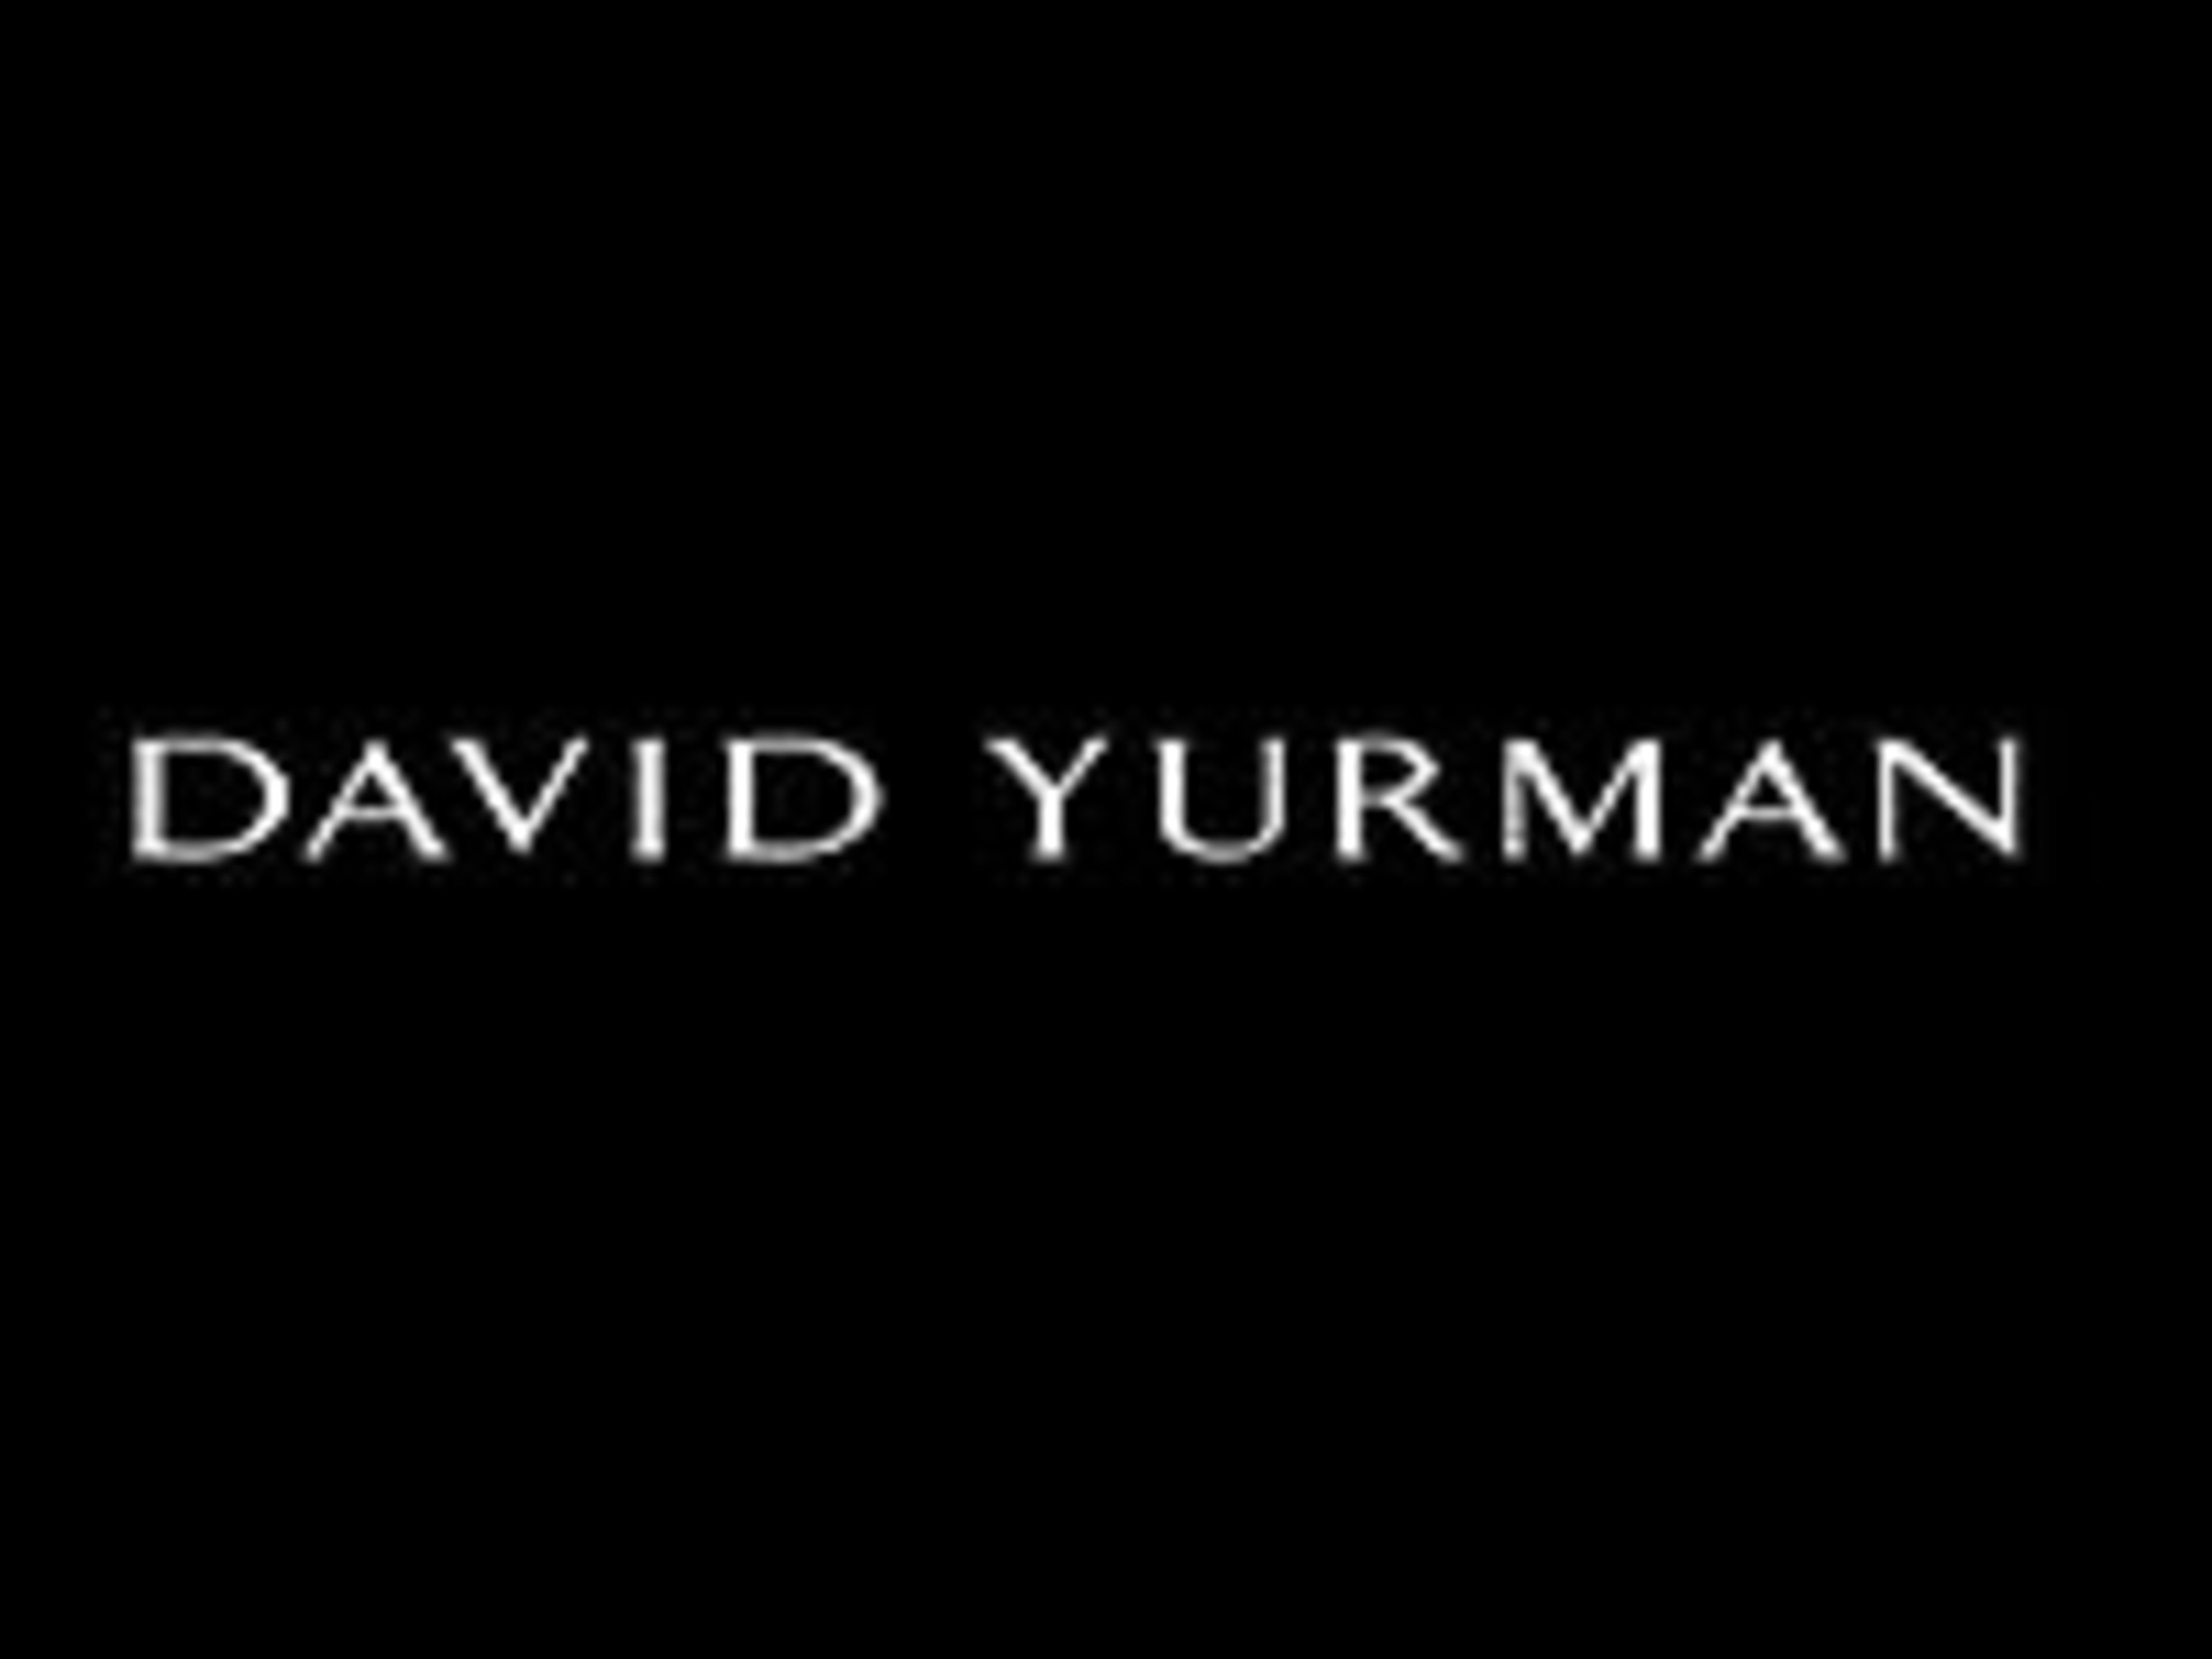 David YurmanCode